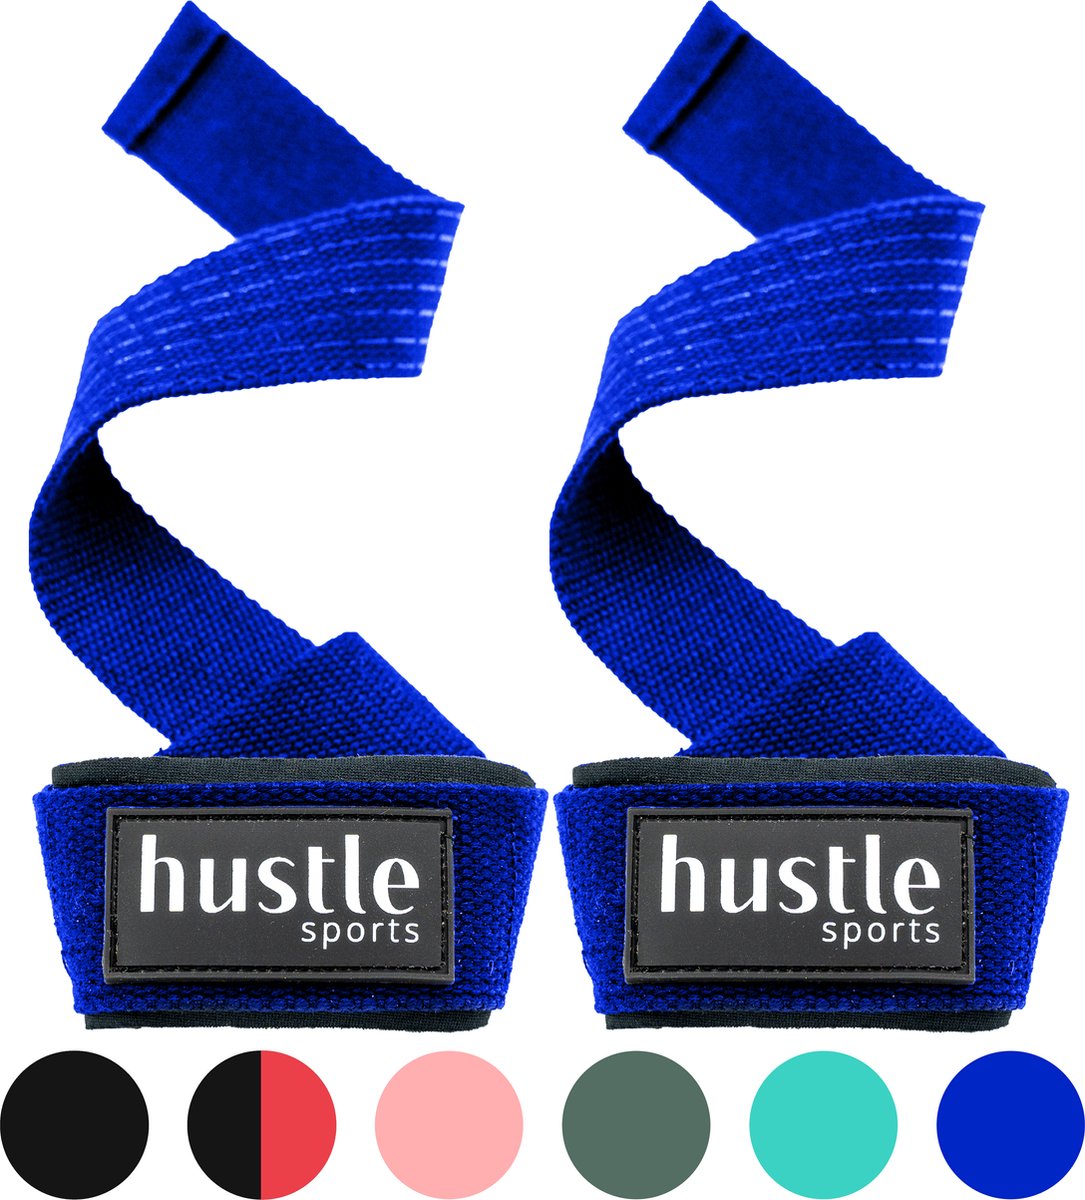 hustle - Blauwe Lifting Straps - met Padding en Anti-slip - Padded - Lifting Grips/Hooks - Deadlift Straps - Voor Fitness